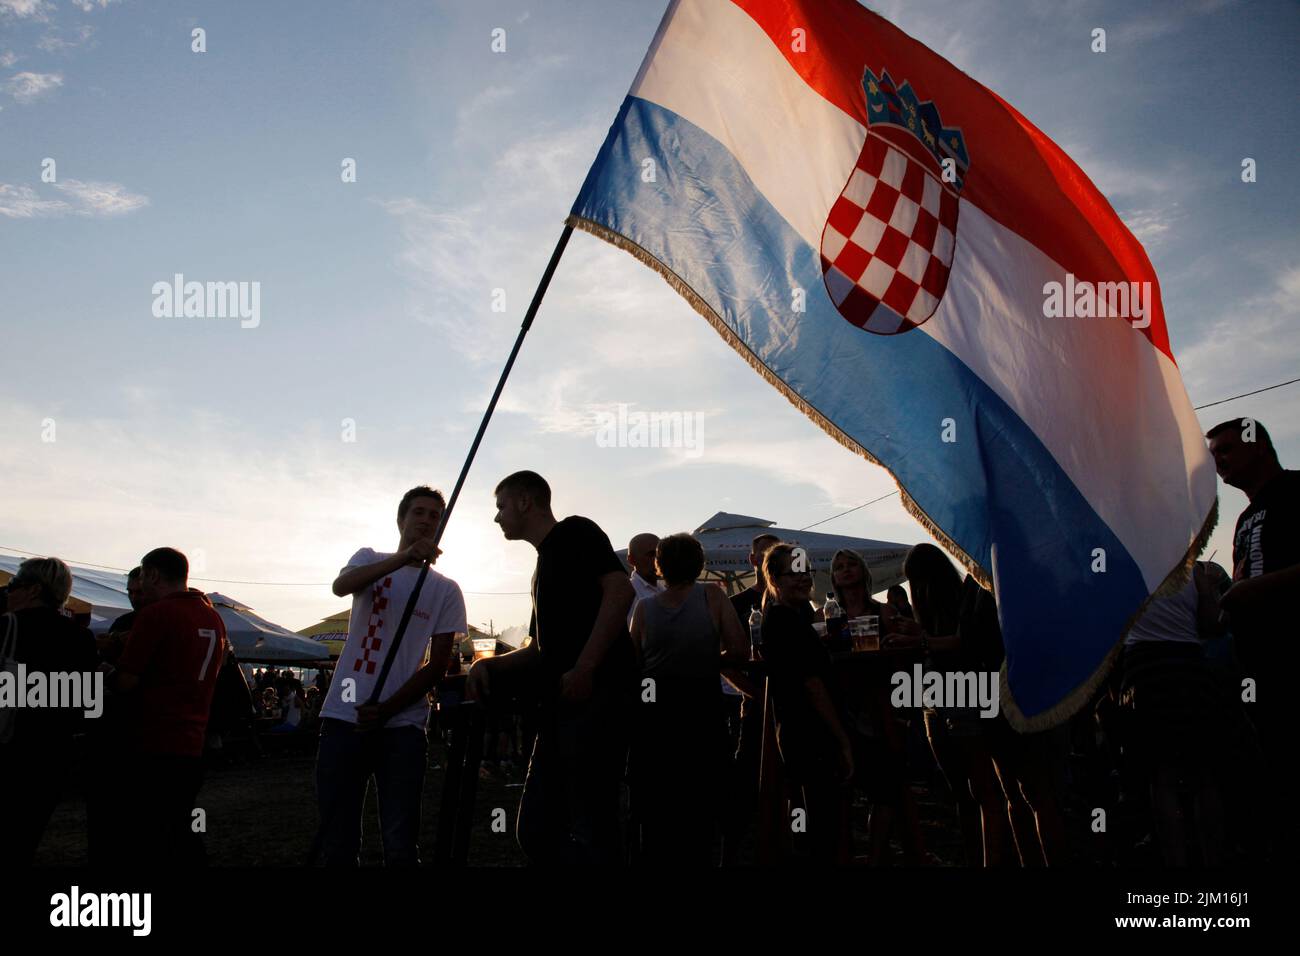 Cavoglave, Croatie. Un festival rural célèbre la victoire croate dans la guerre d'indépendance et l'opération Storm. Banque D'Images